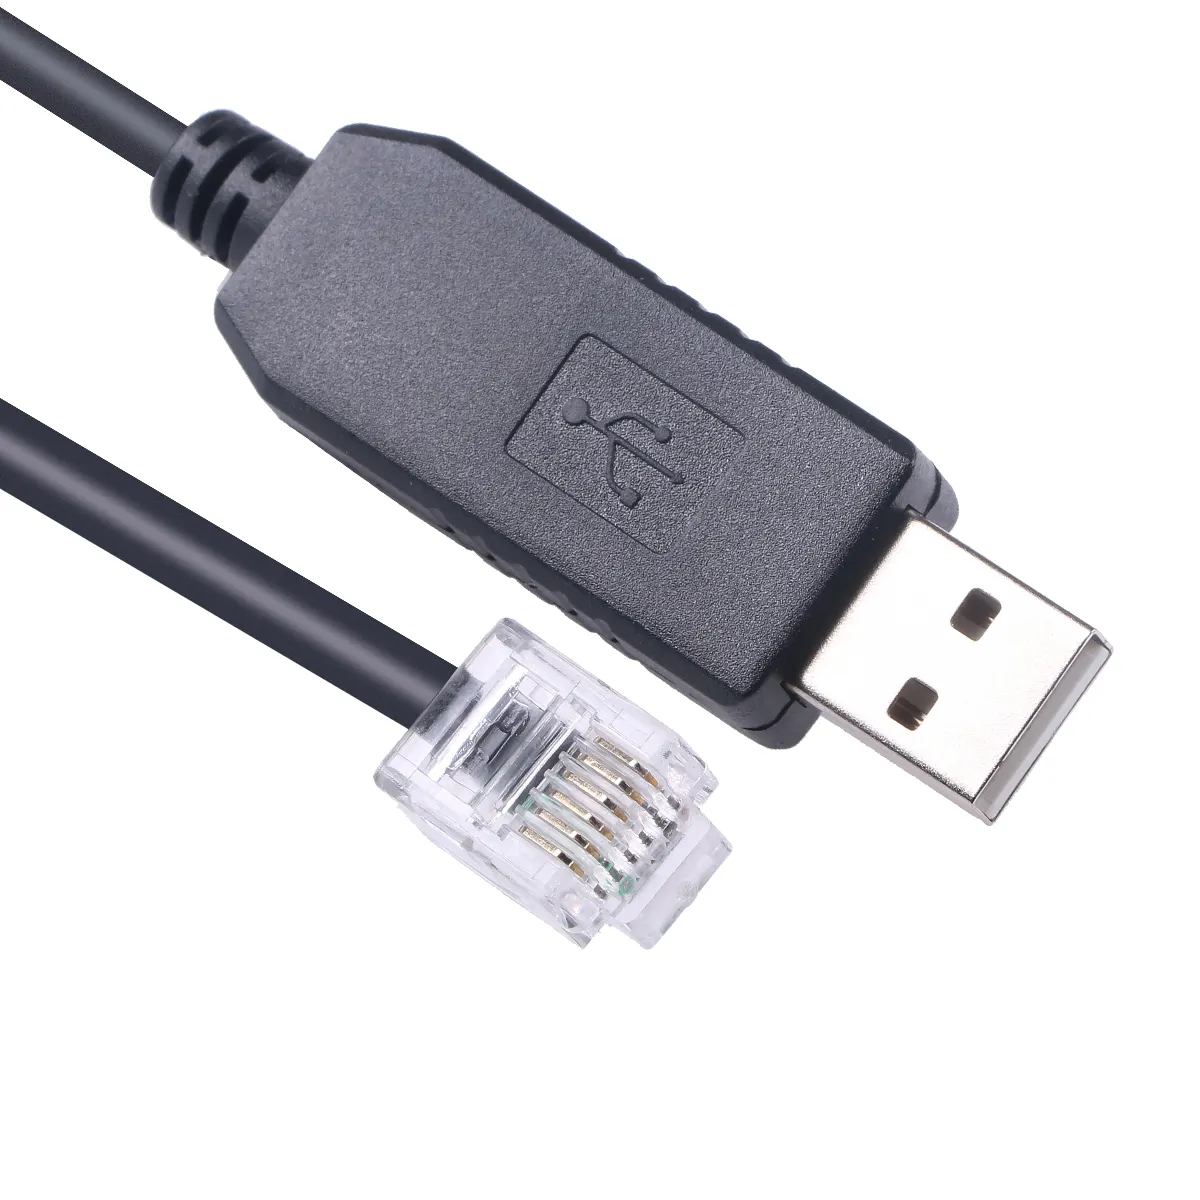 Cable serie USB para configuración de gestión de interruptor gestionado Hirschmann V.24, cable de comunicación RS232 serie a RJ11